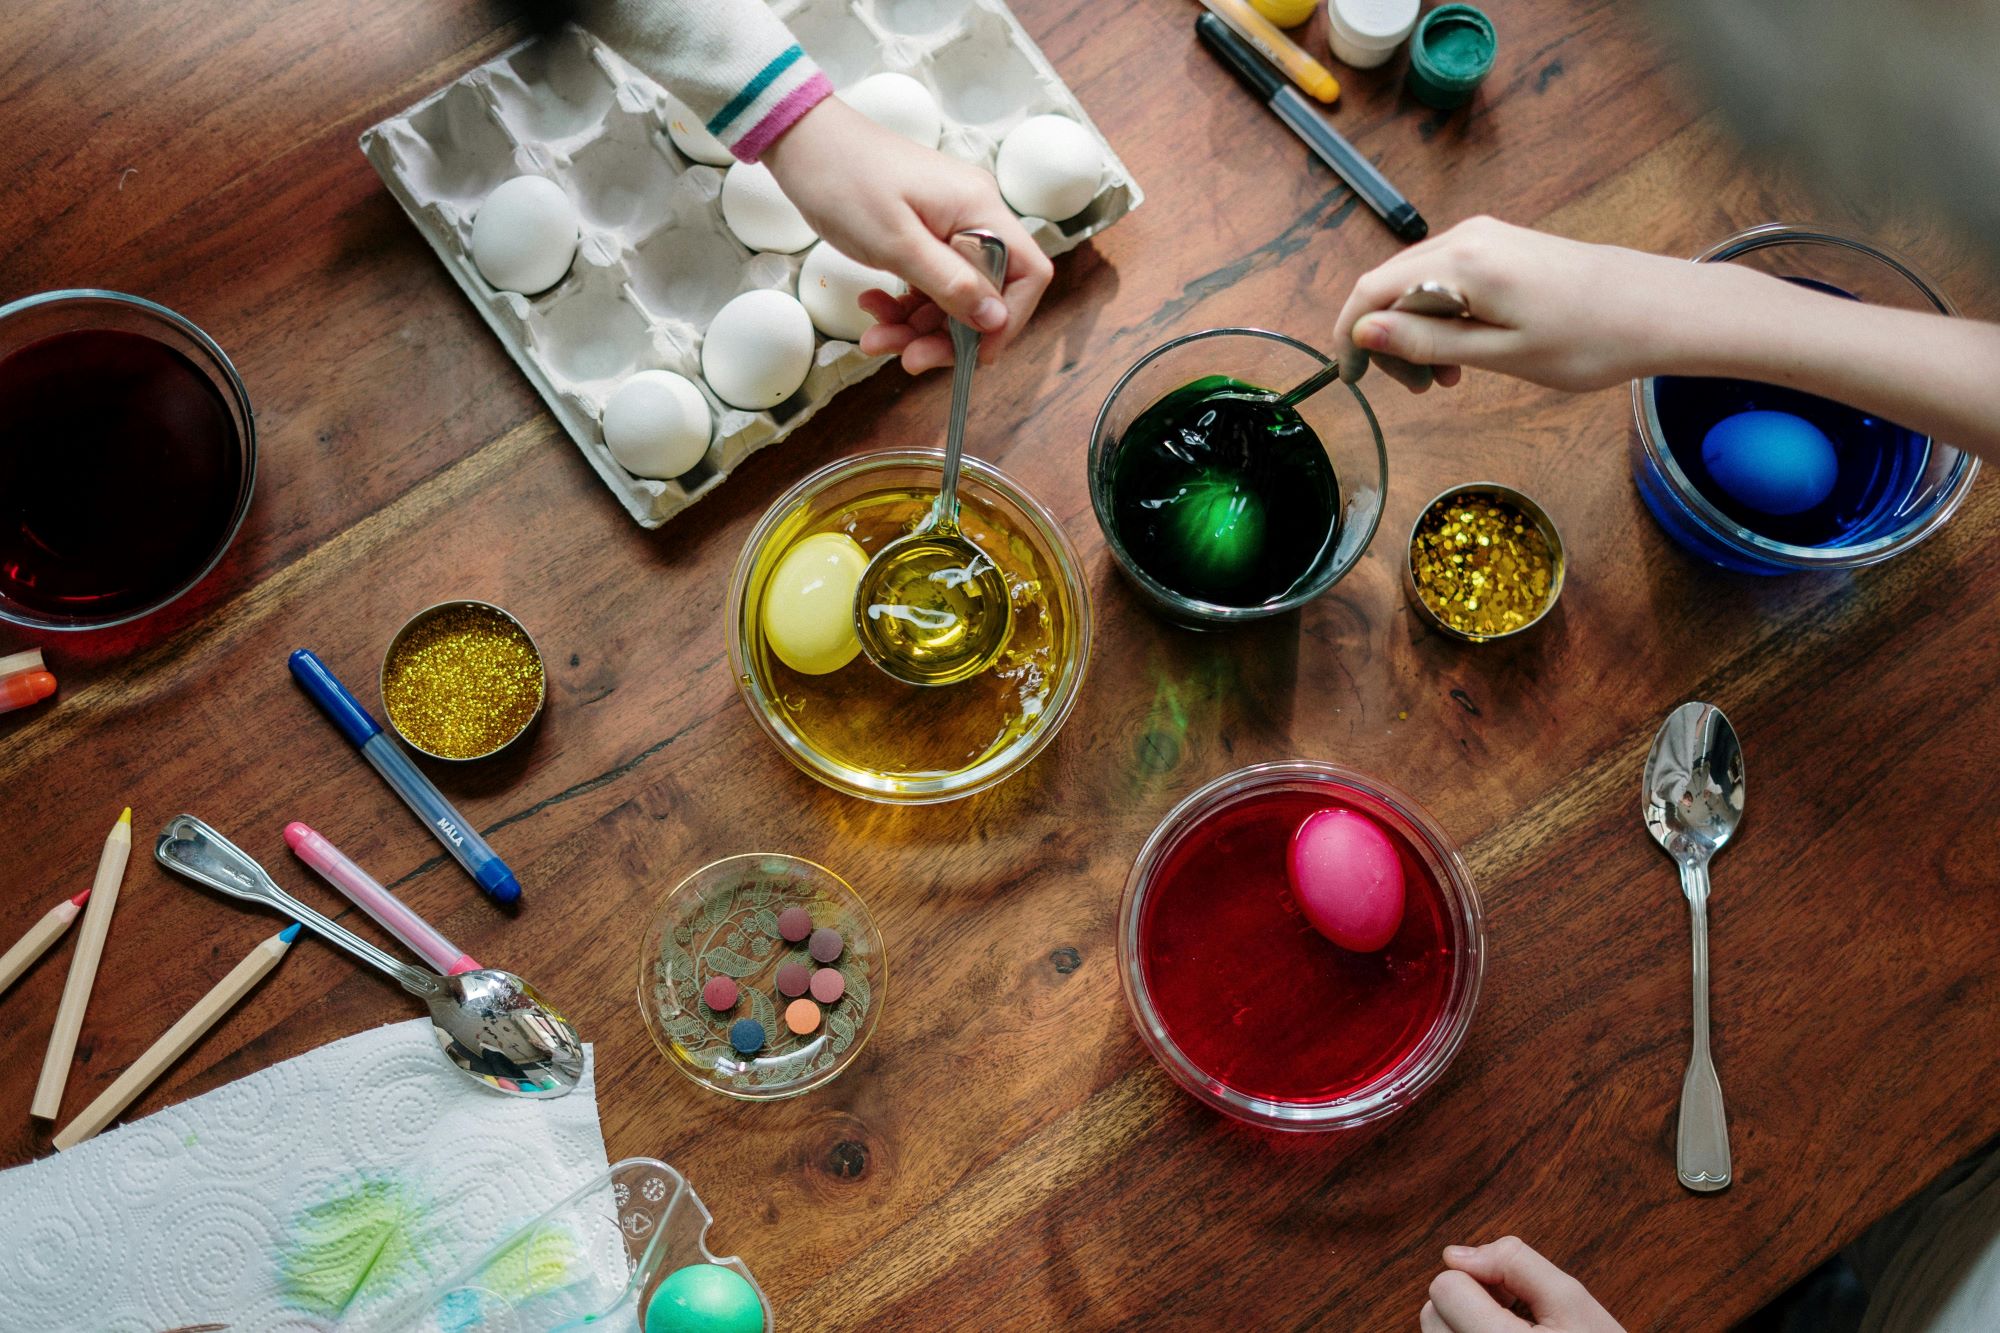 Dekorowanie jajek na Wielkanoc, czyli tworzenie pisanek to wielkanocna tradycja.